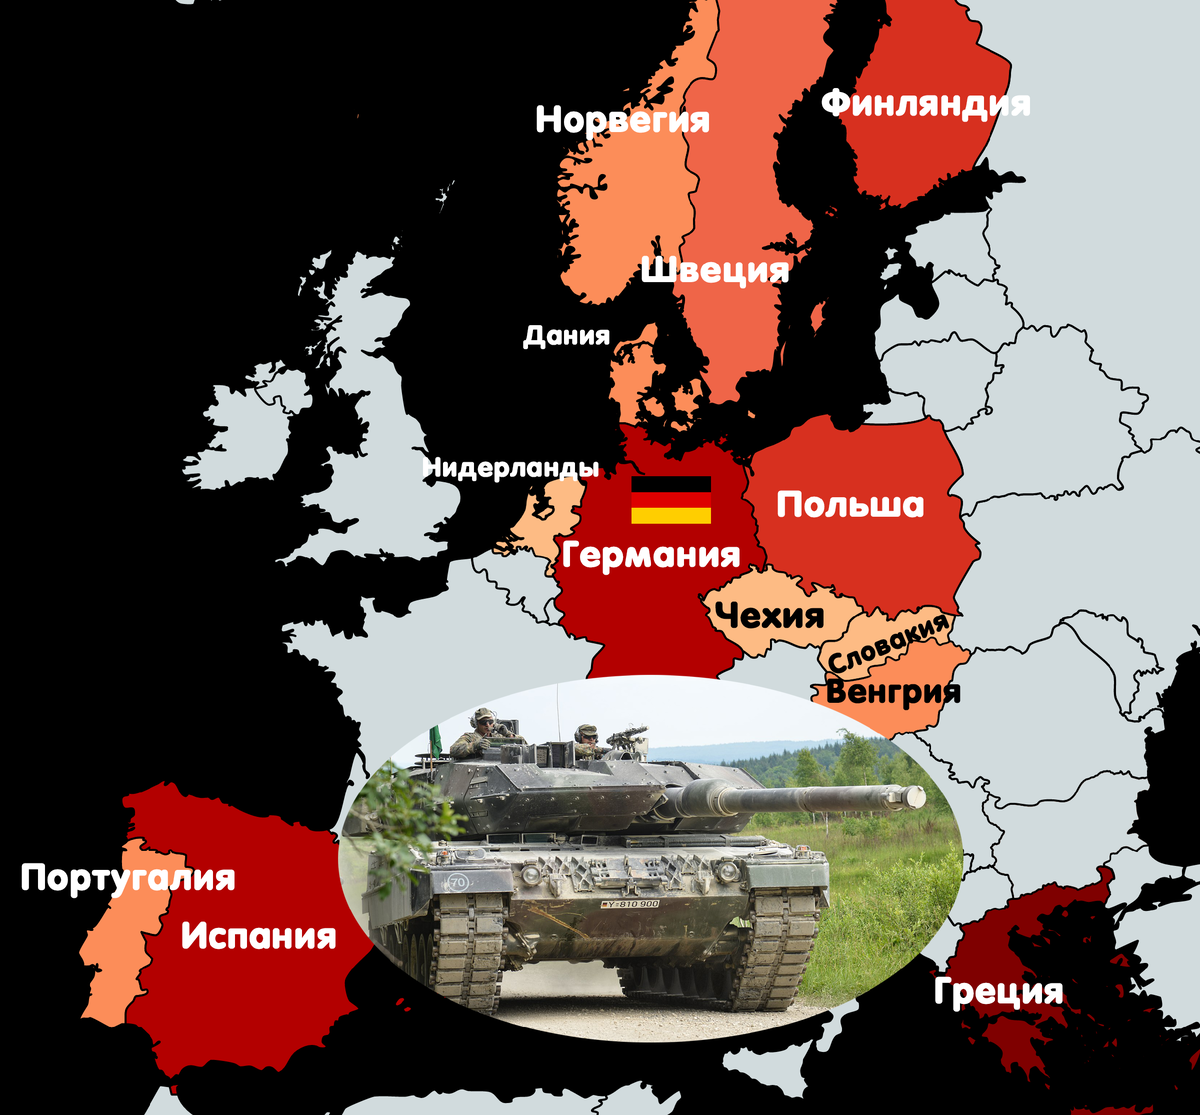 Количество танков у стран. Сколько танков в европейских странах. Количество танков по странам. Количество танков Leopard по странам. Танковая страна